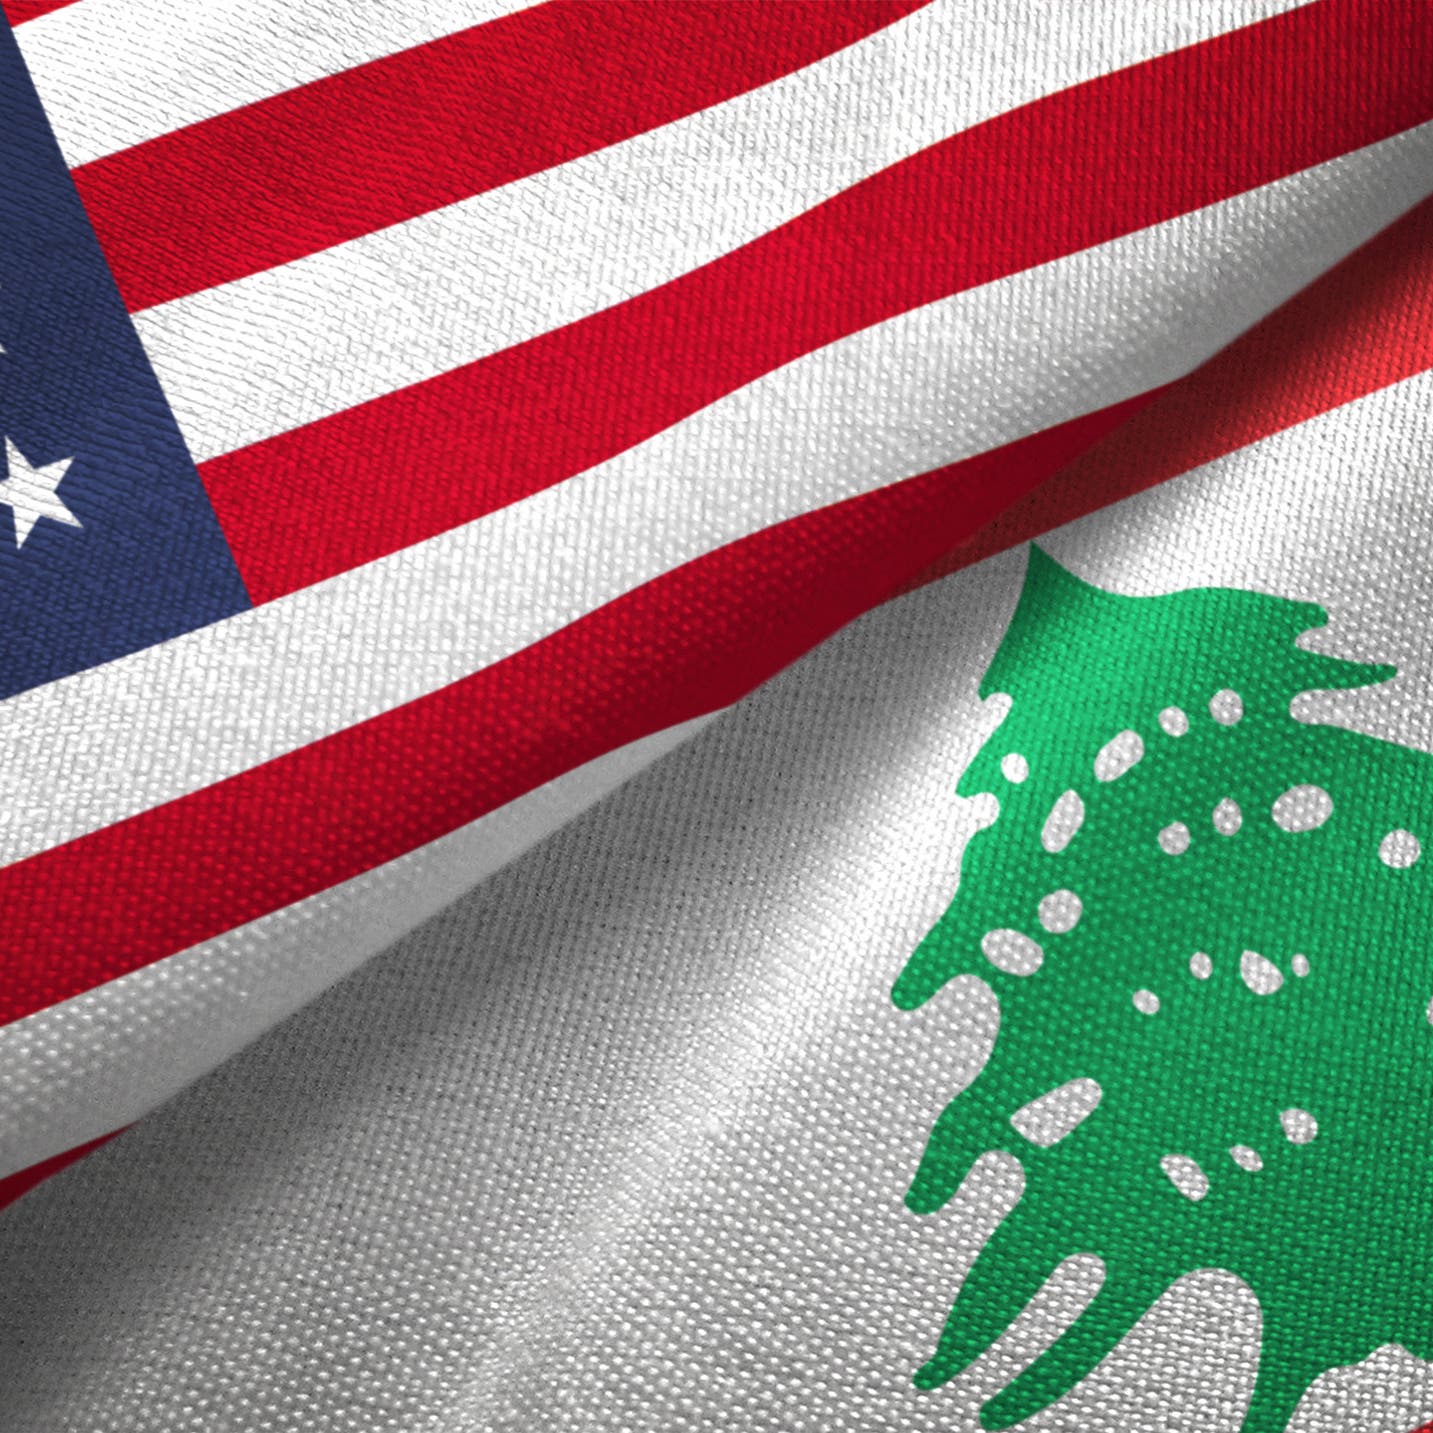 واشنطن تدعو رعاياها في لبنان لتوخي درجة عالية من الحذر